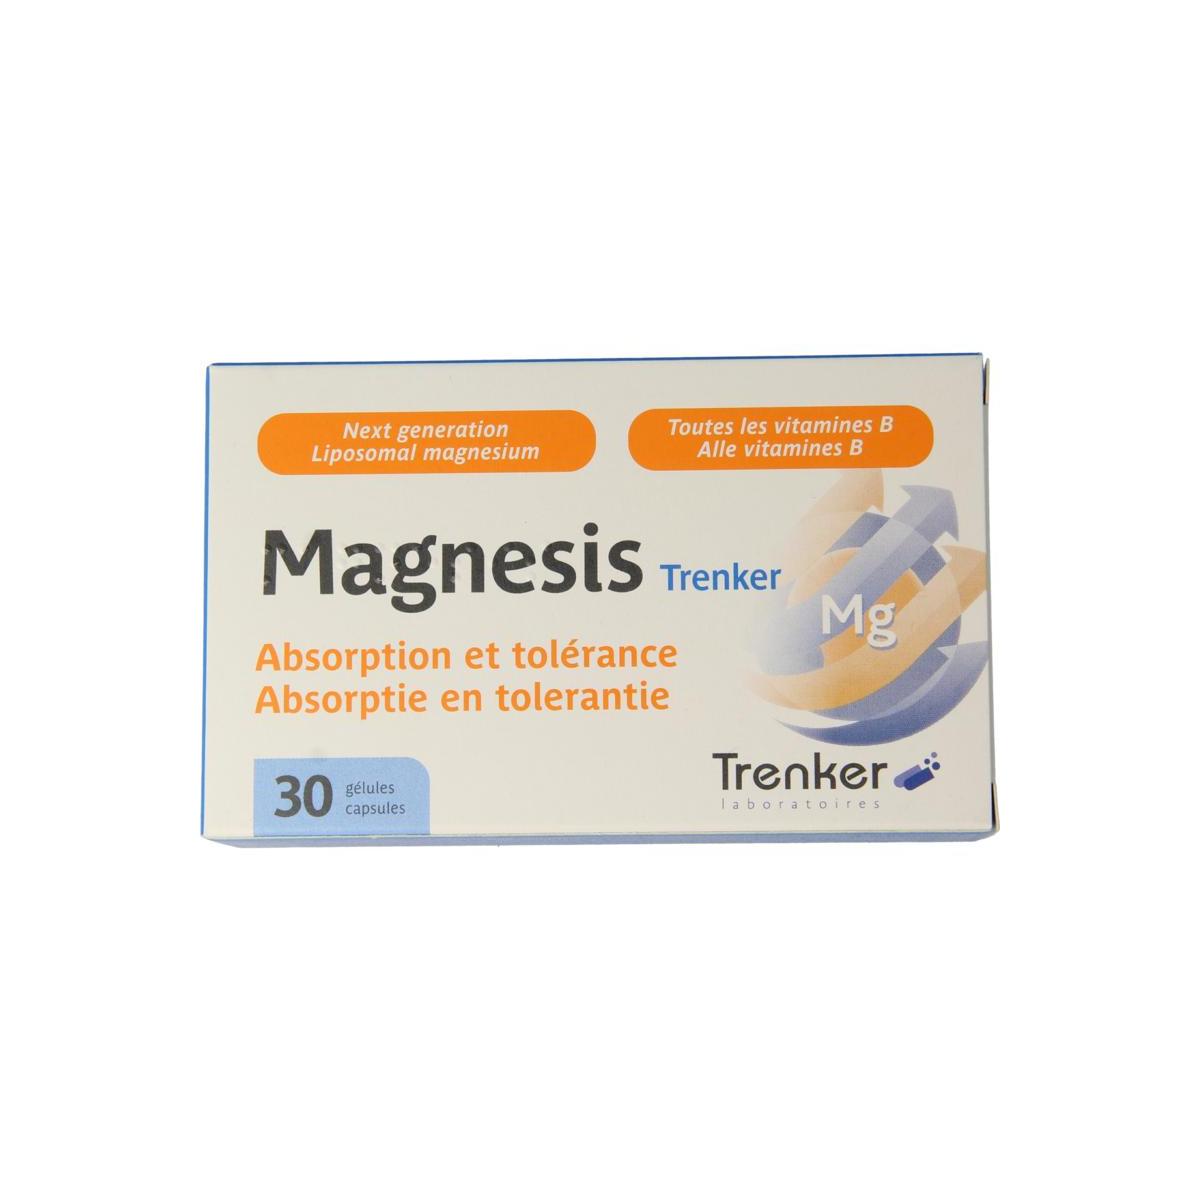 magnesis Trenker